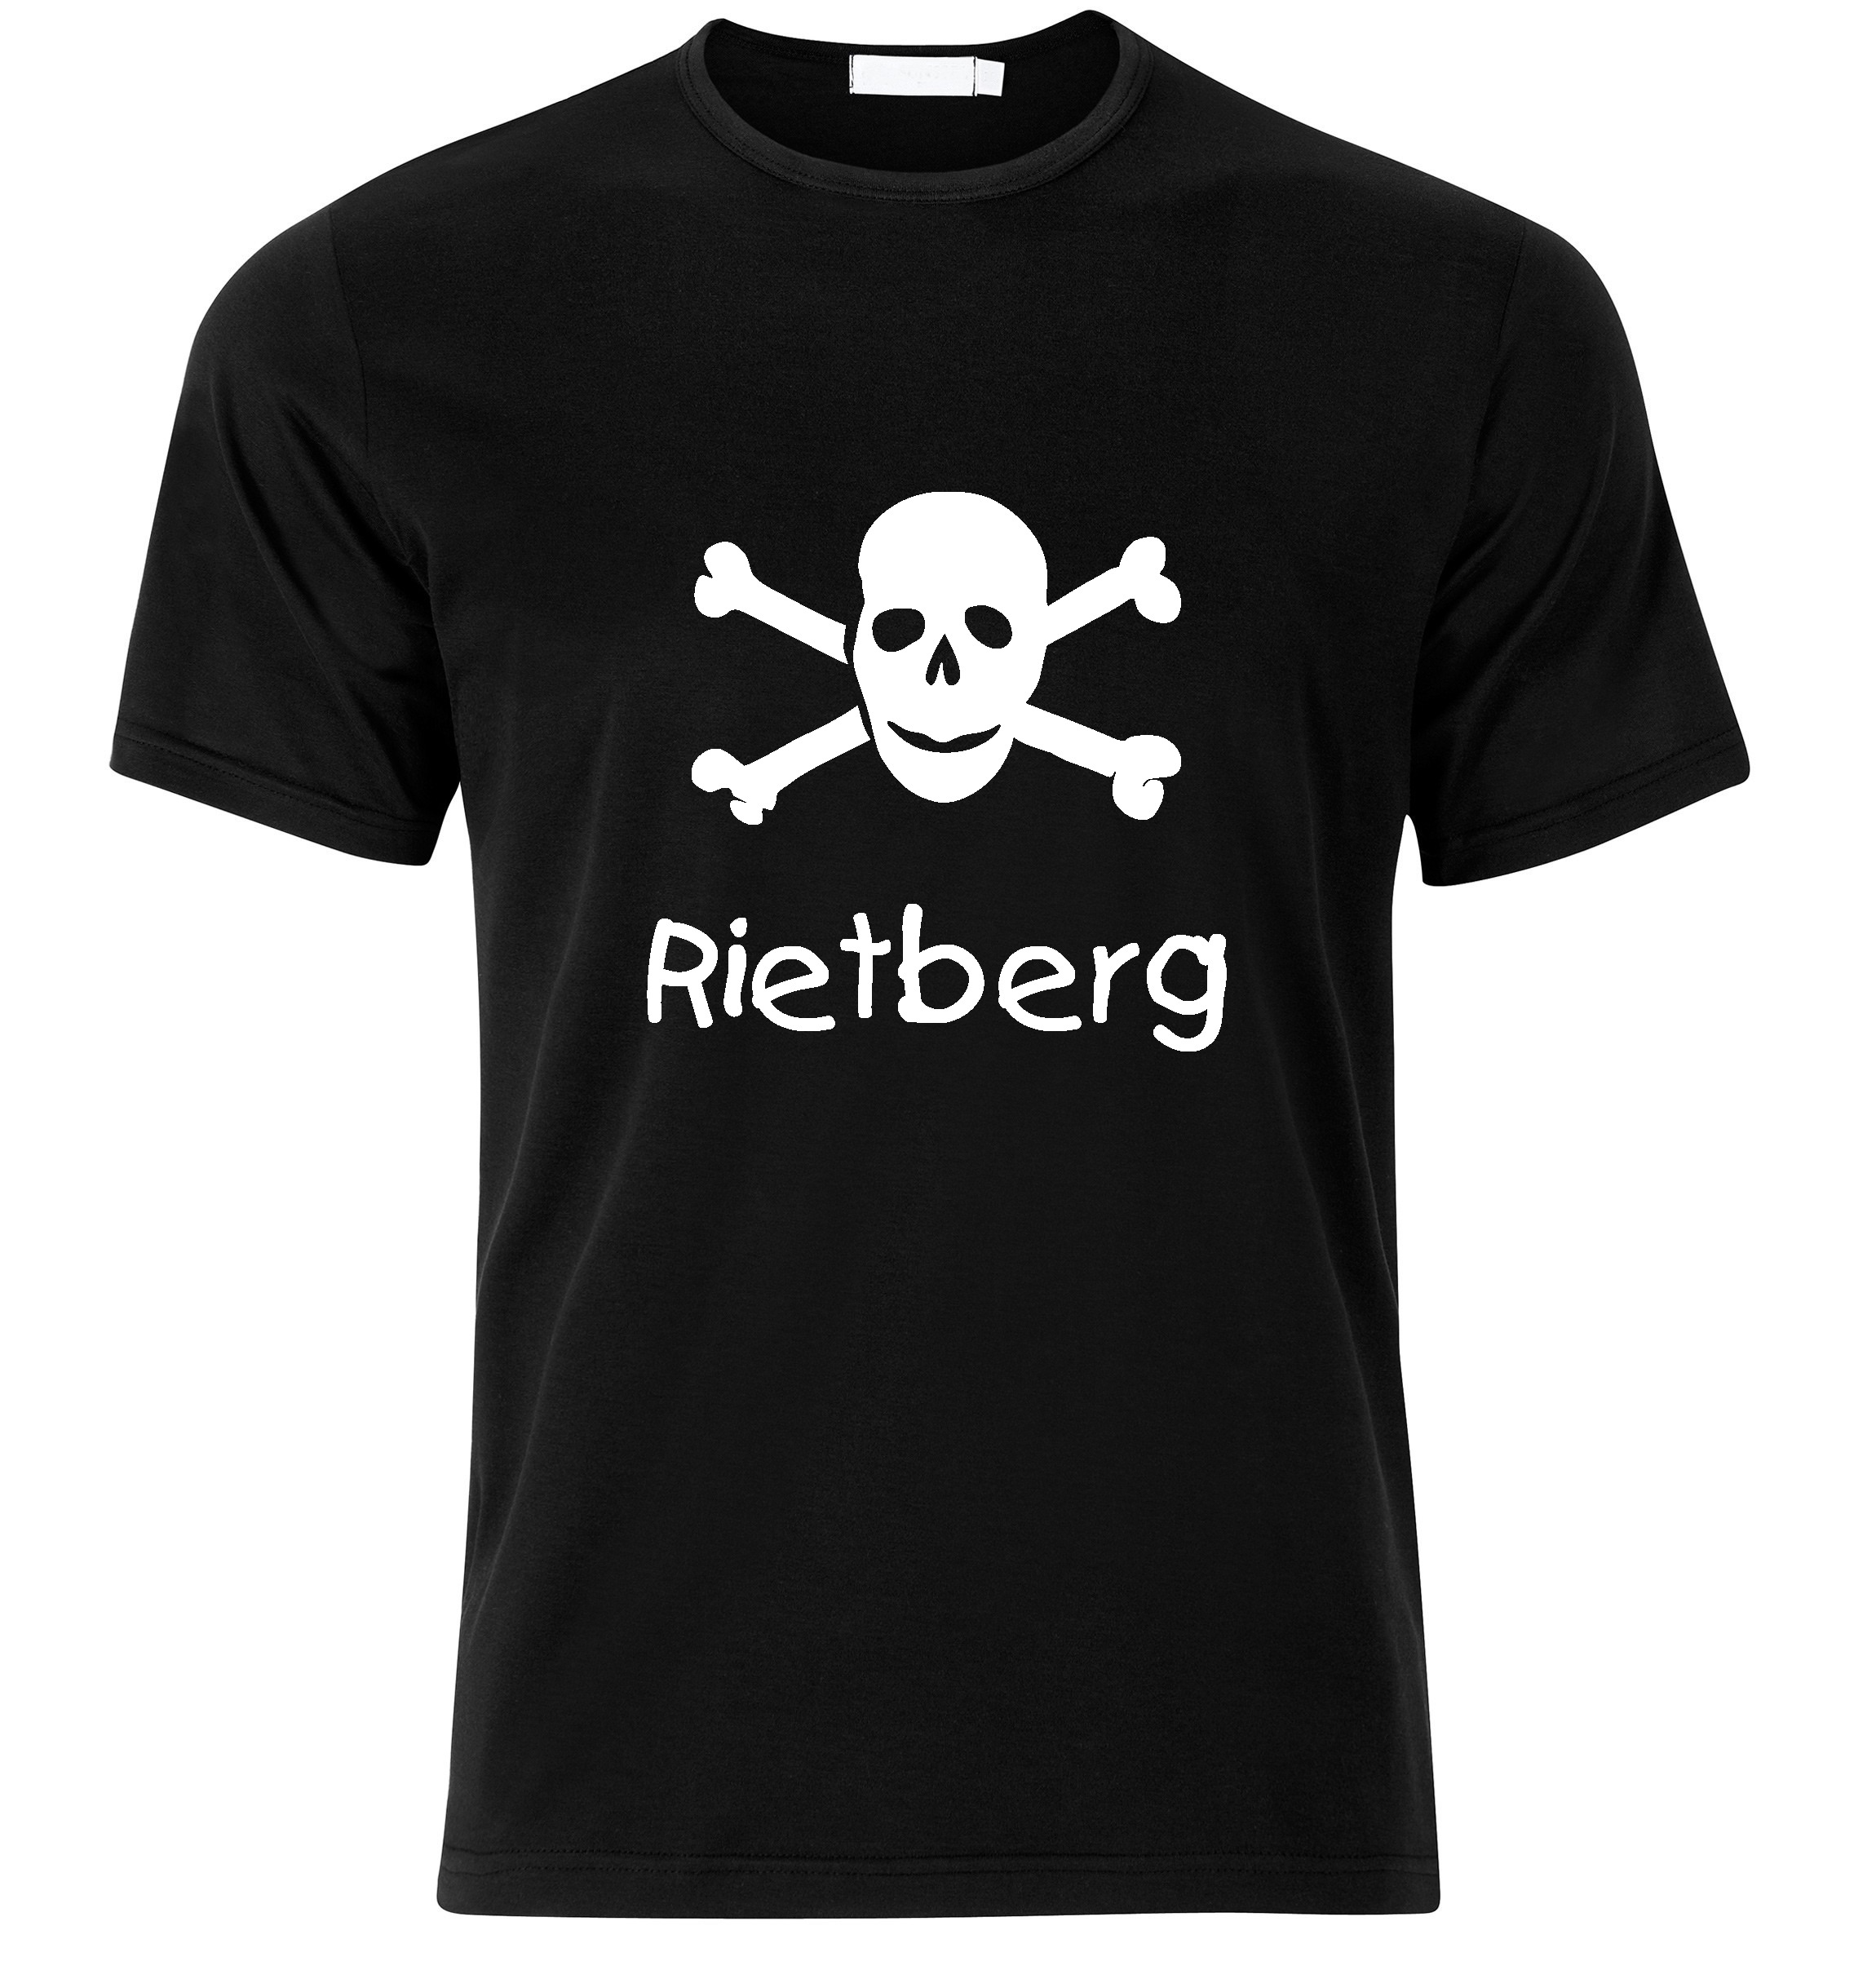 T-Shirt Rietberg Jolly Roger, Totenkopf